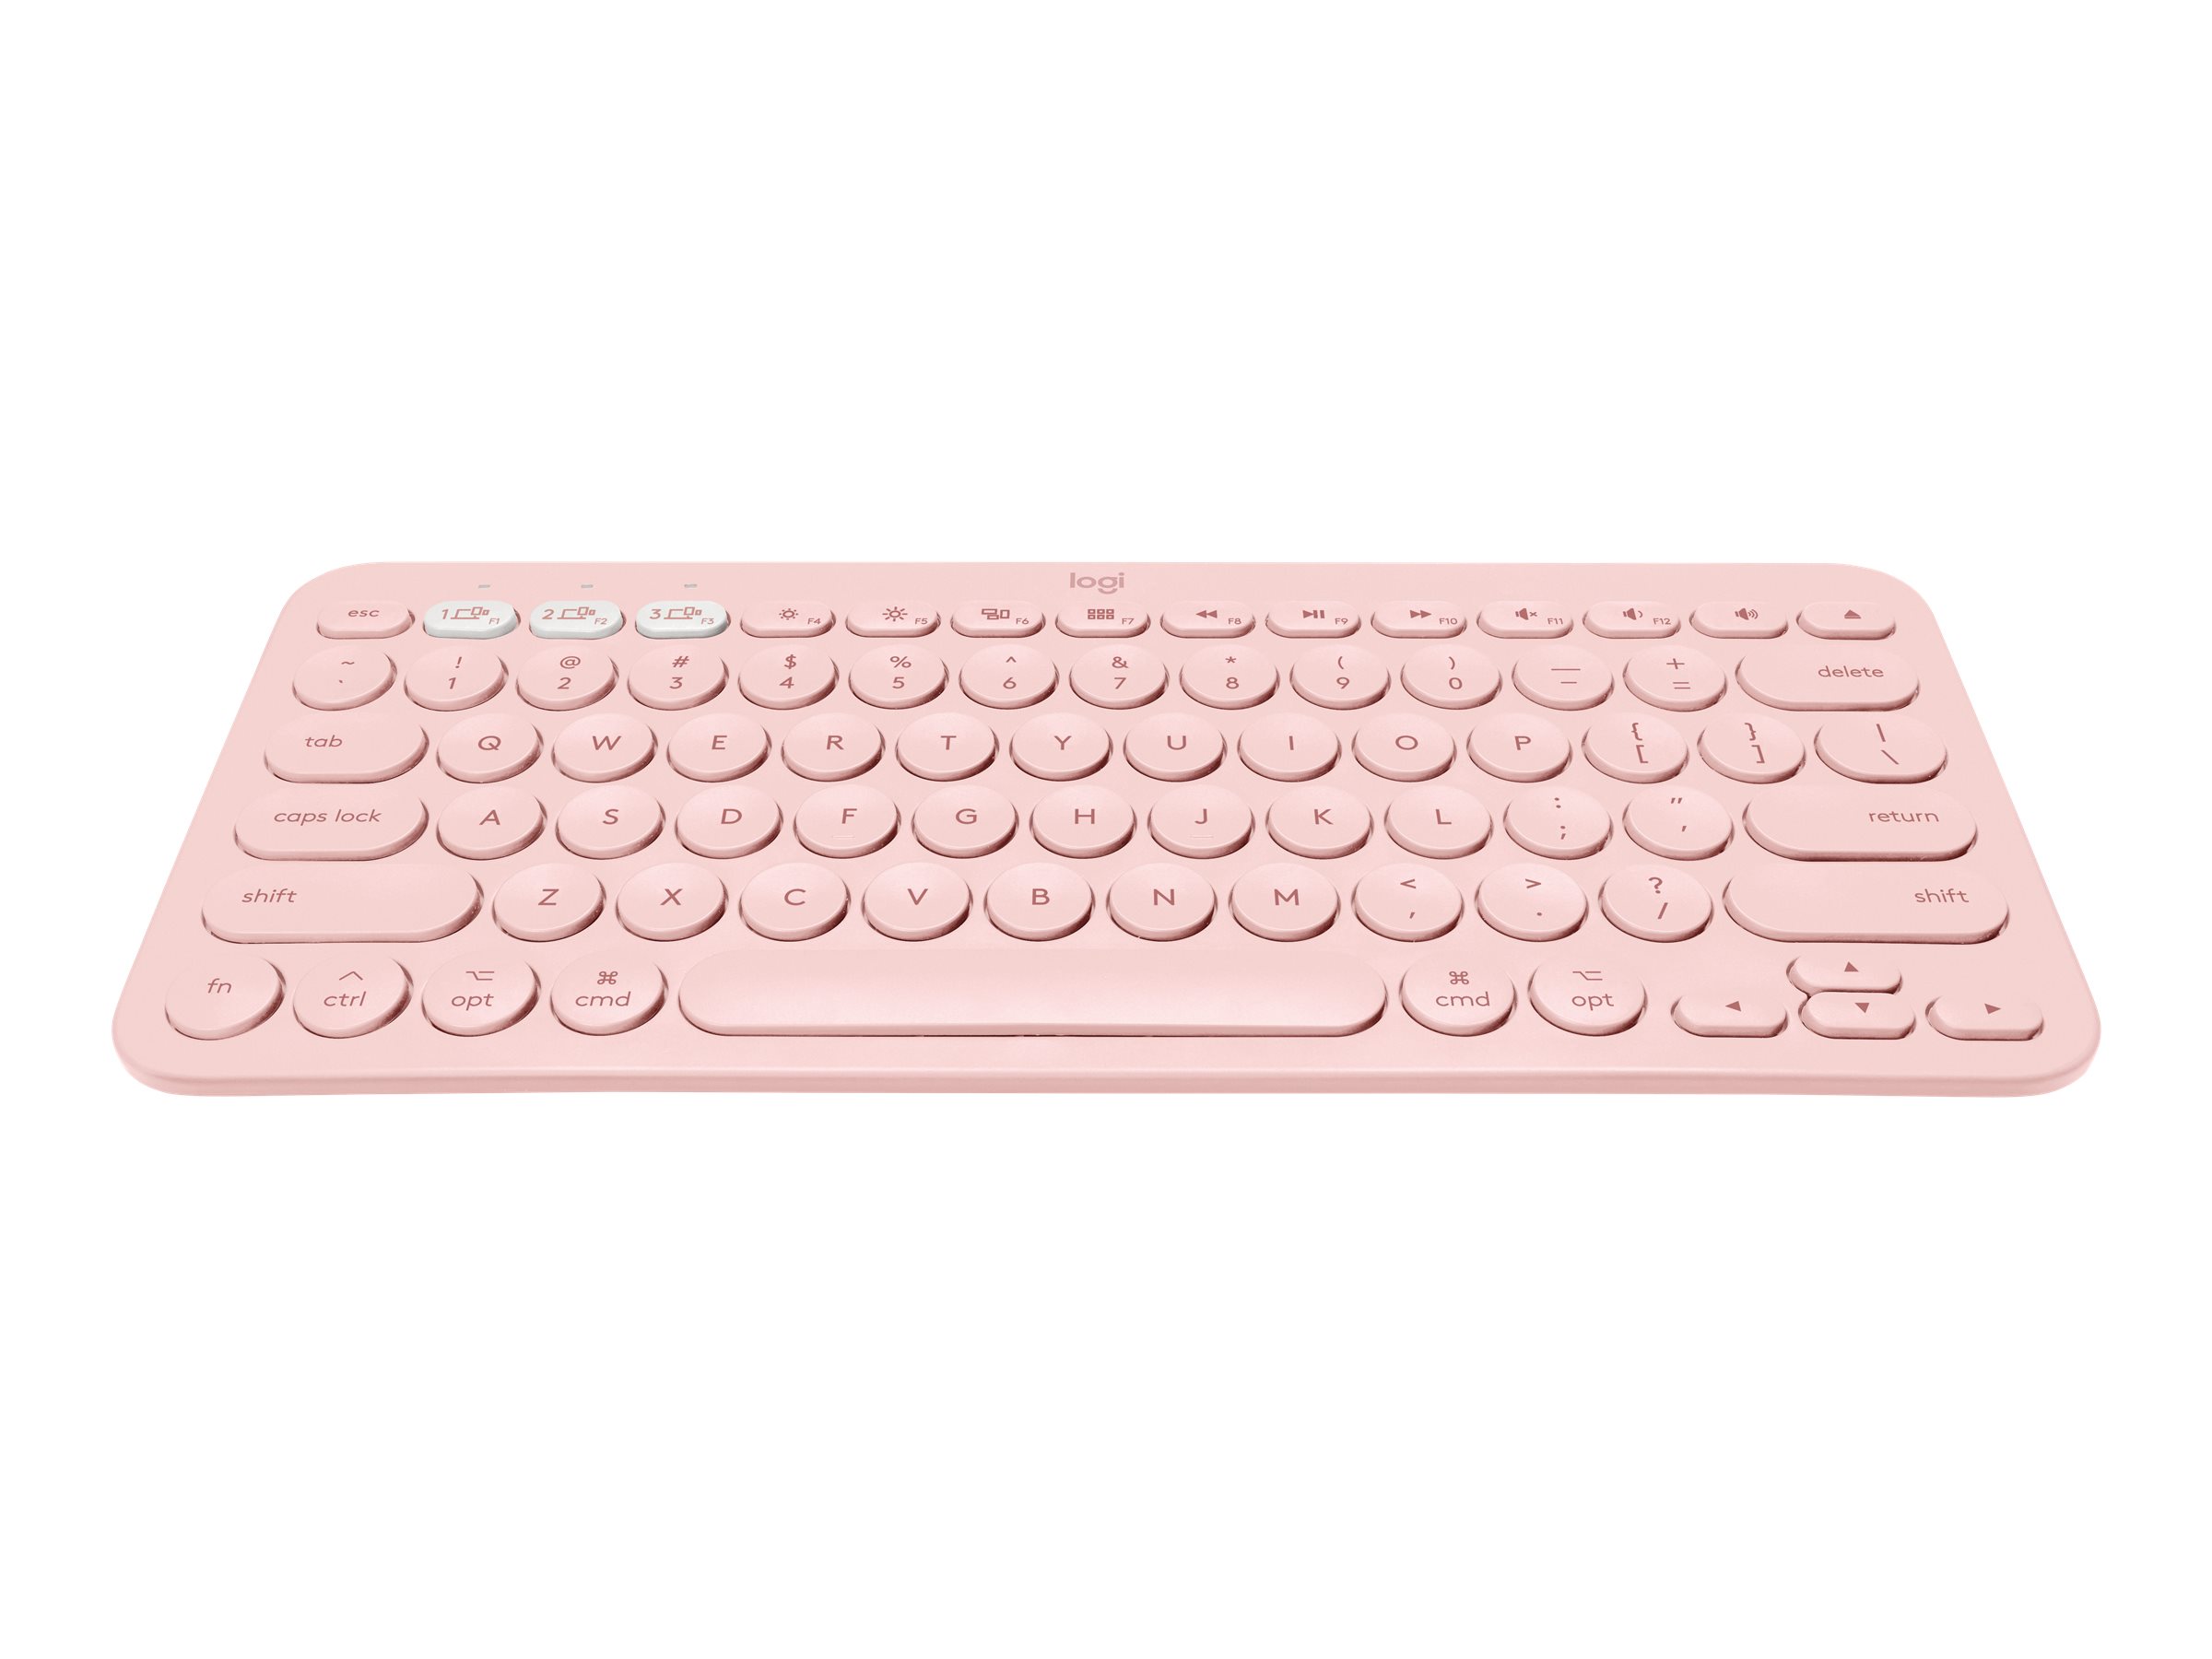 Keyboard Mac Bluetooth Multi-Device for Logitech K380